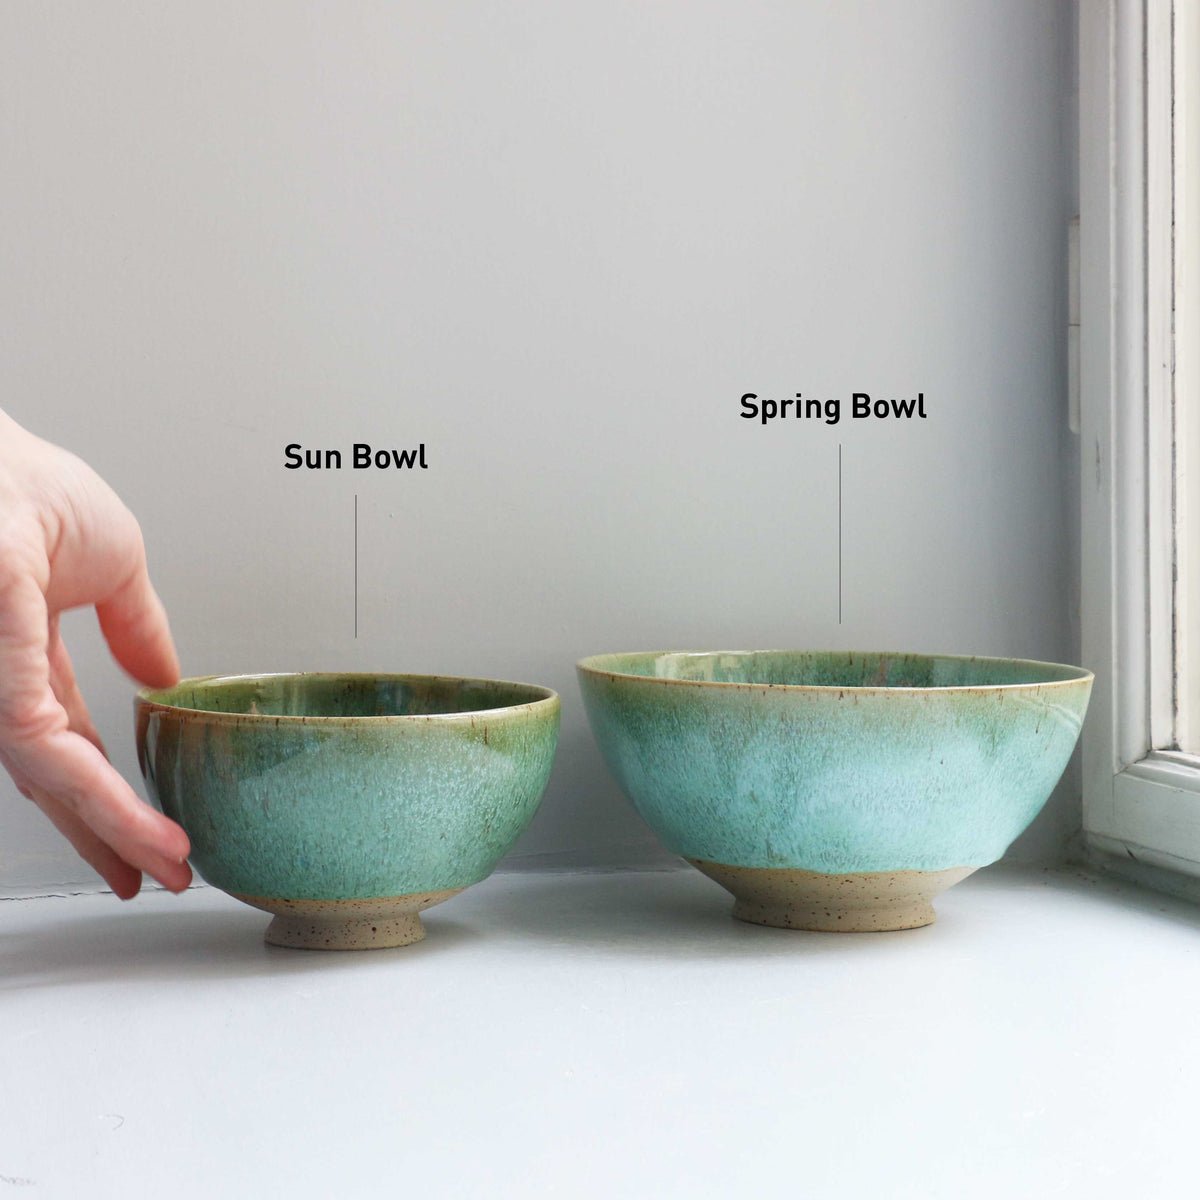 Spring Bowl | Comet Rain | Ramen-Sized Bowl by Studio Arhoj - Lifestory - Studio Arhoj